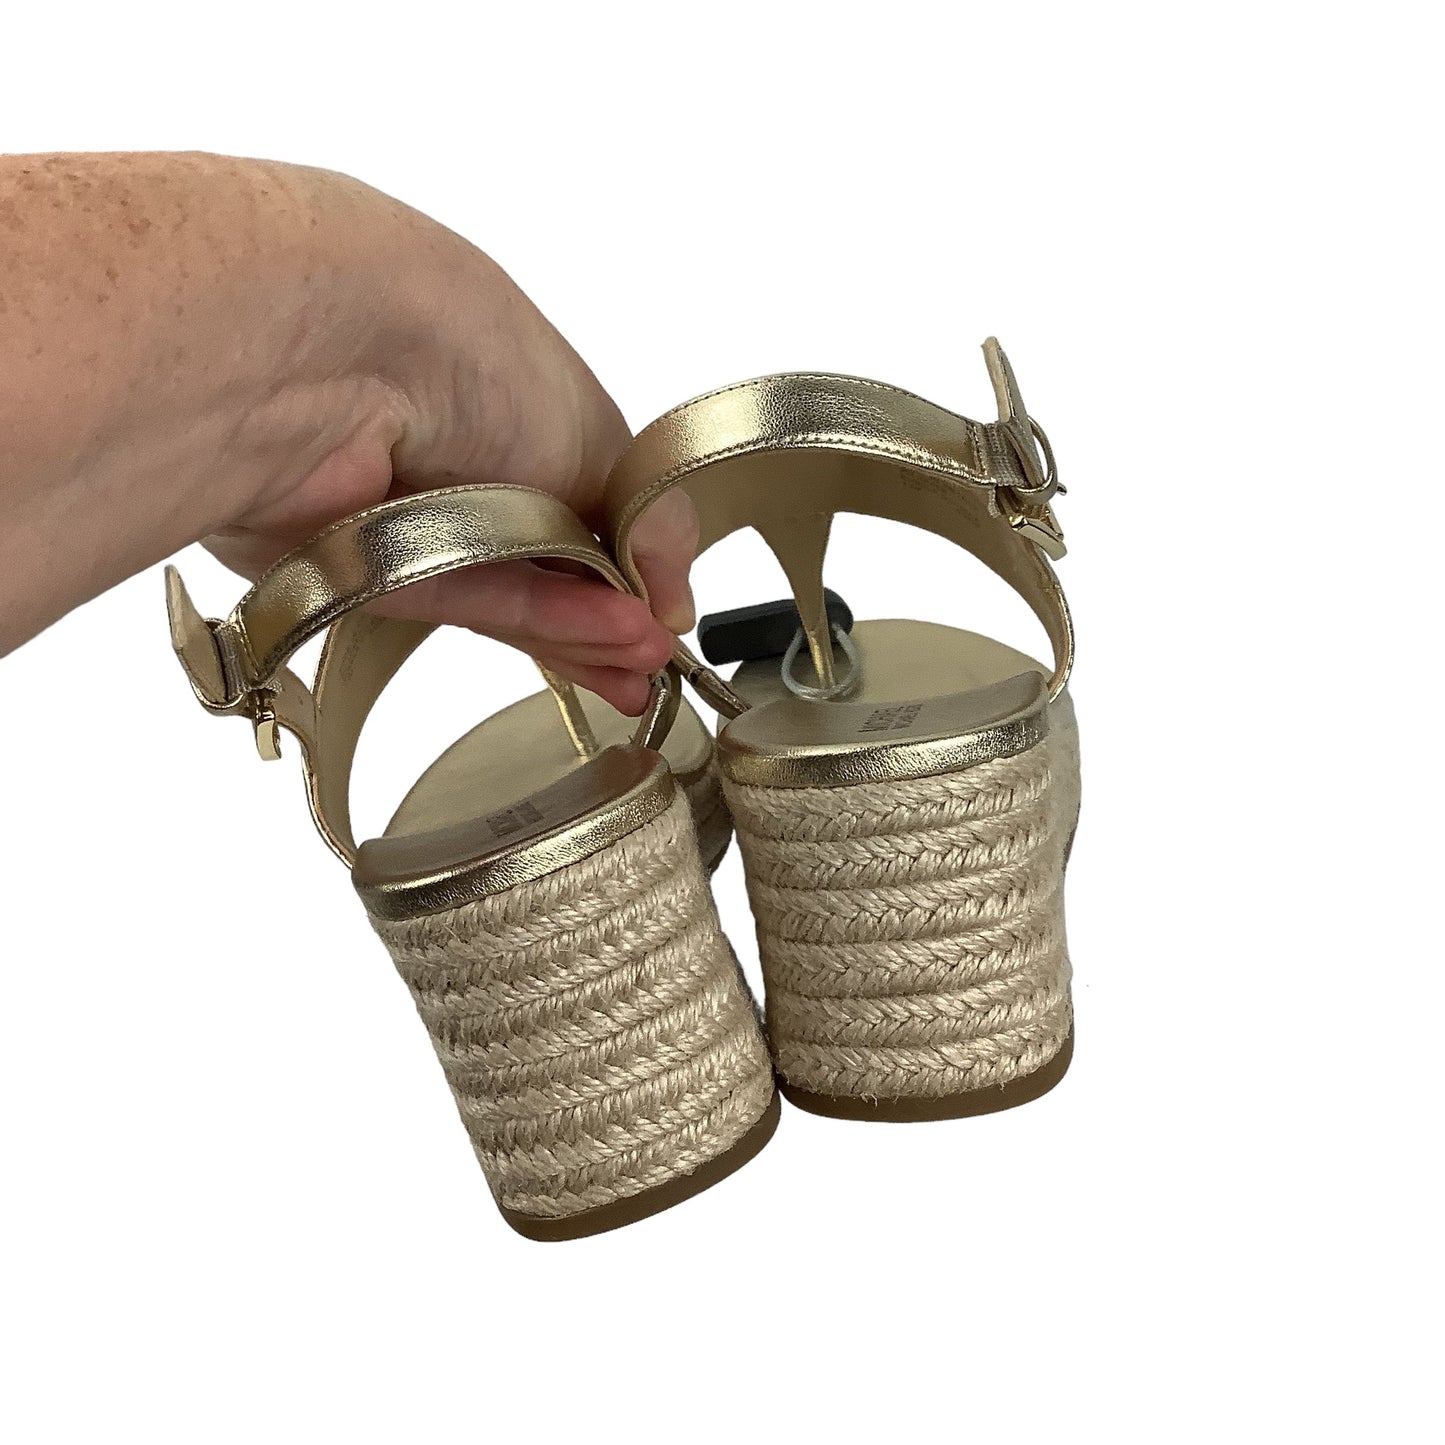 Gold Sandals Designer Michael Kors, Size 7.5